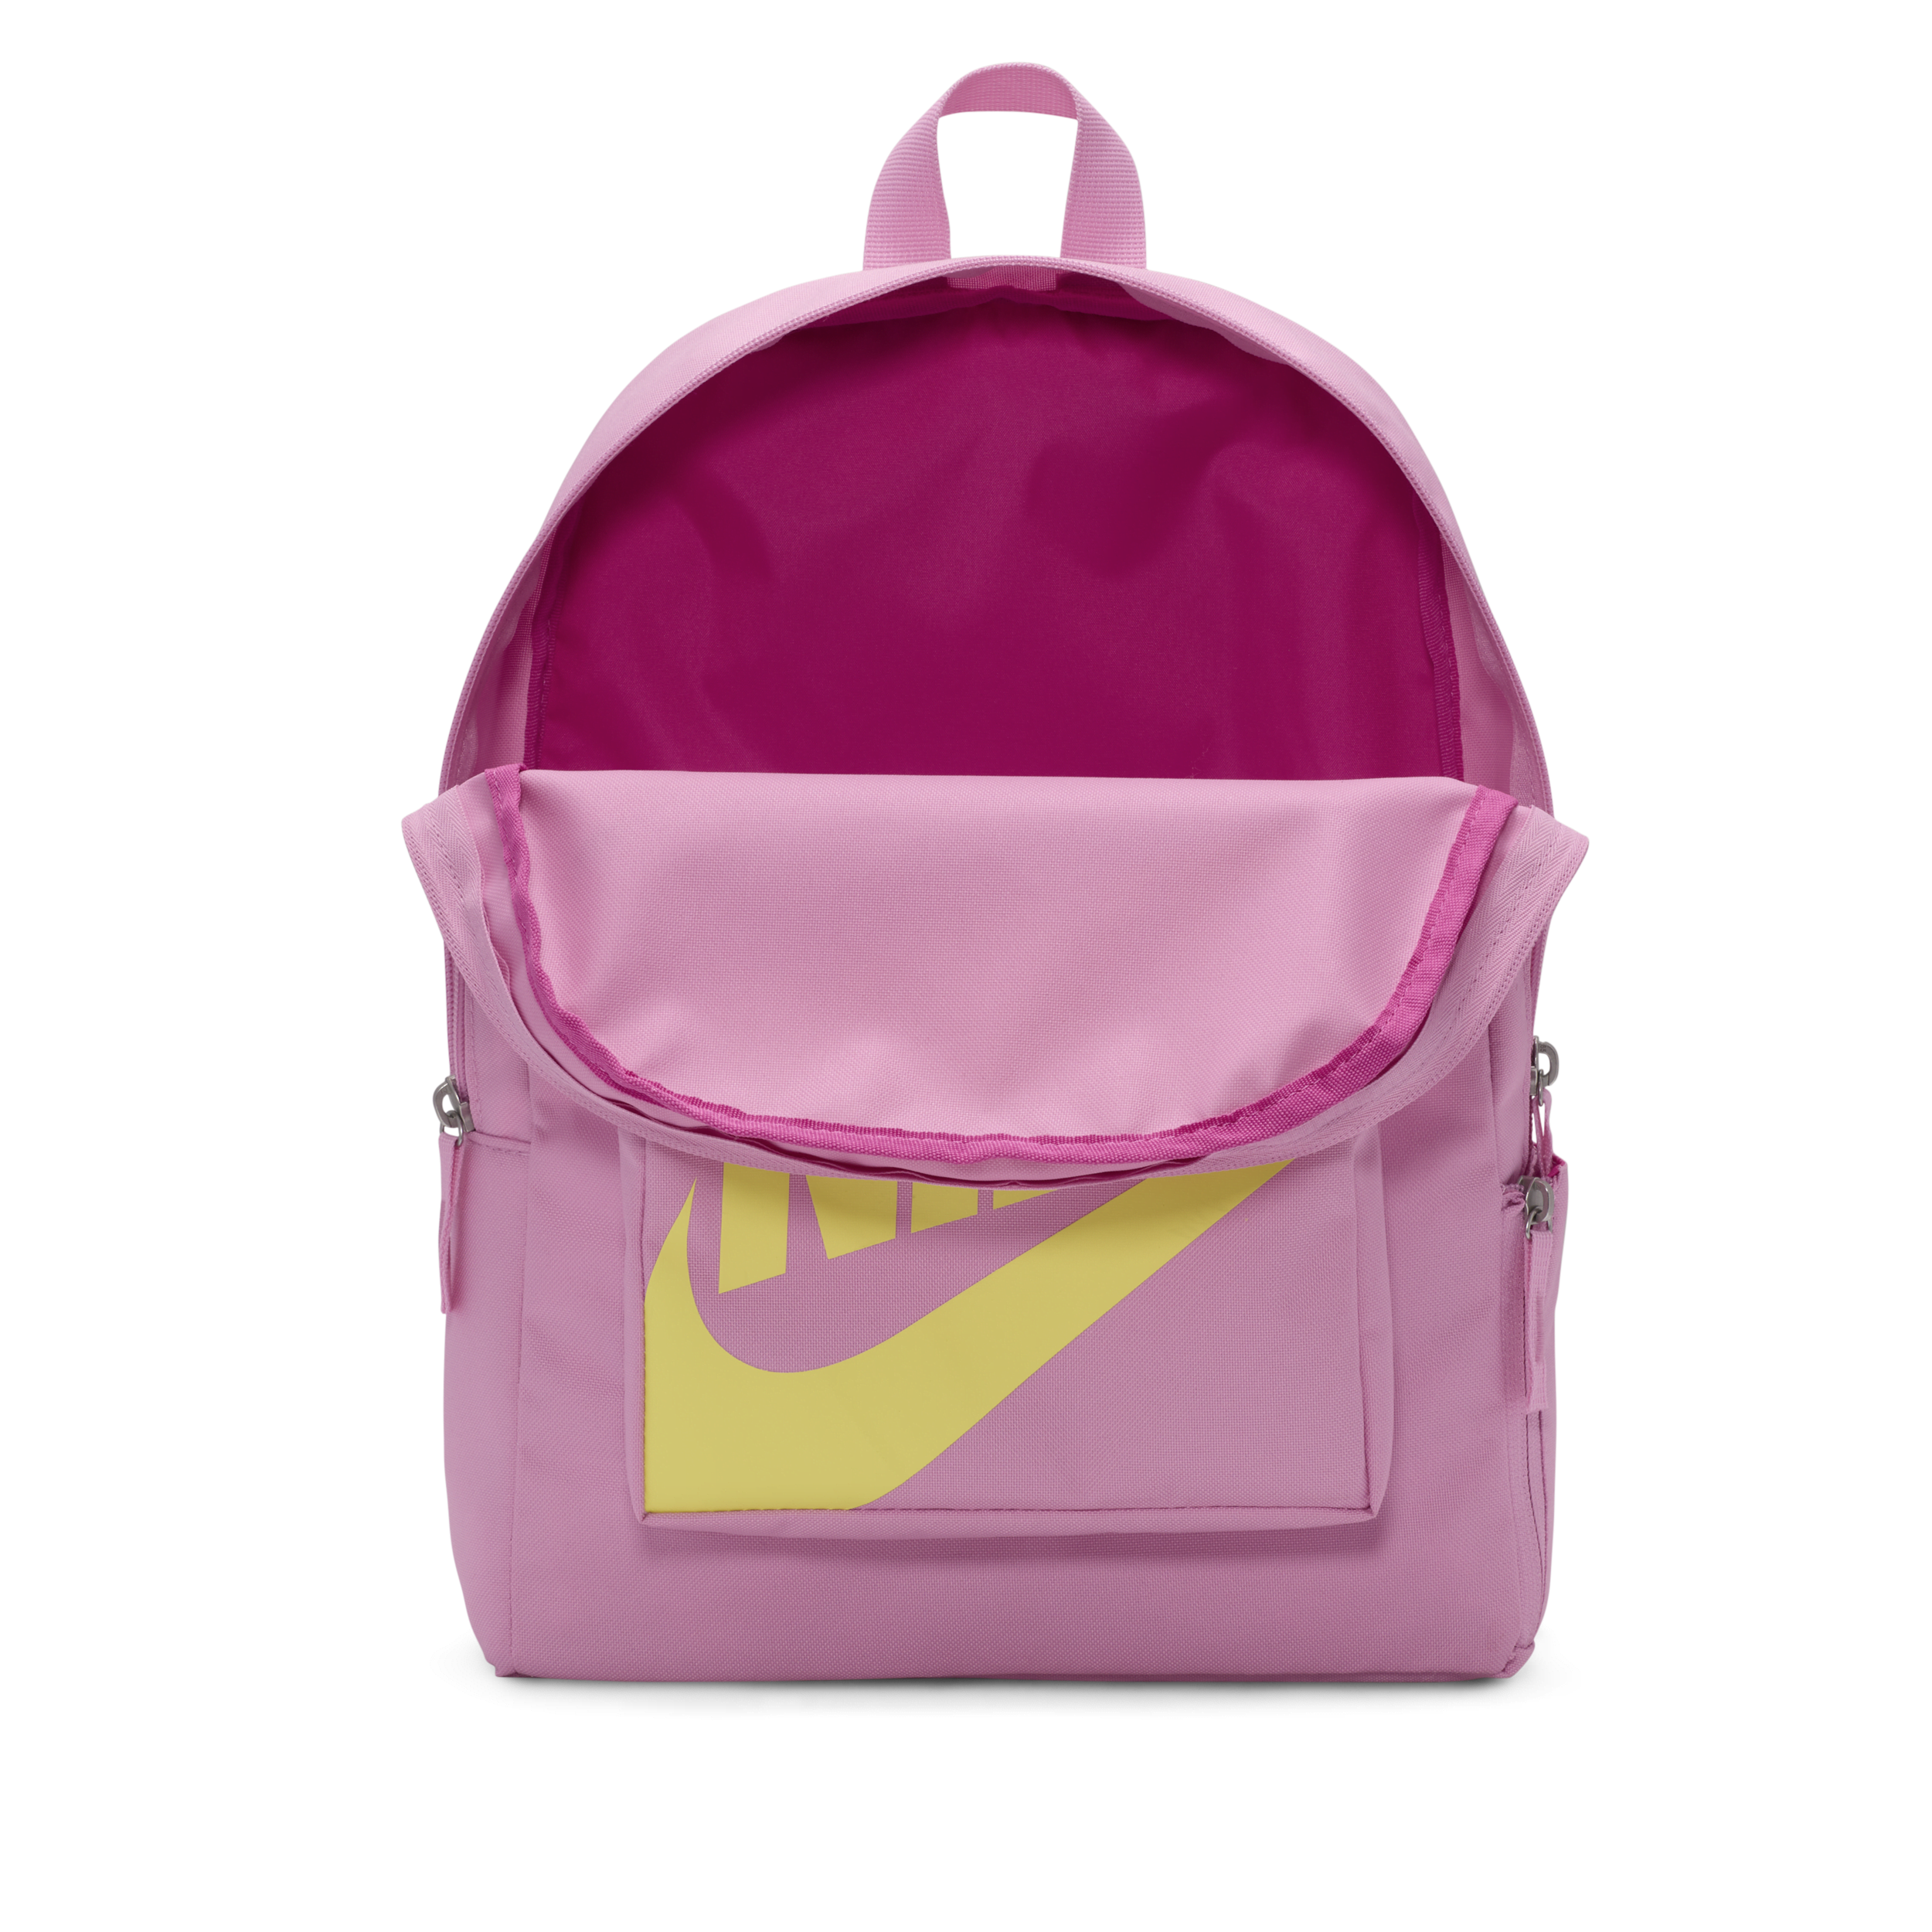 Nike Classic Rugzak voor kids (16 liter) Roze